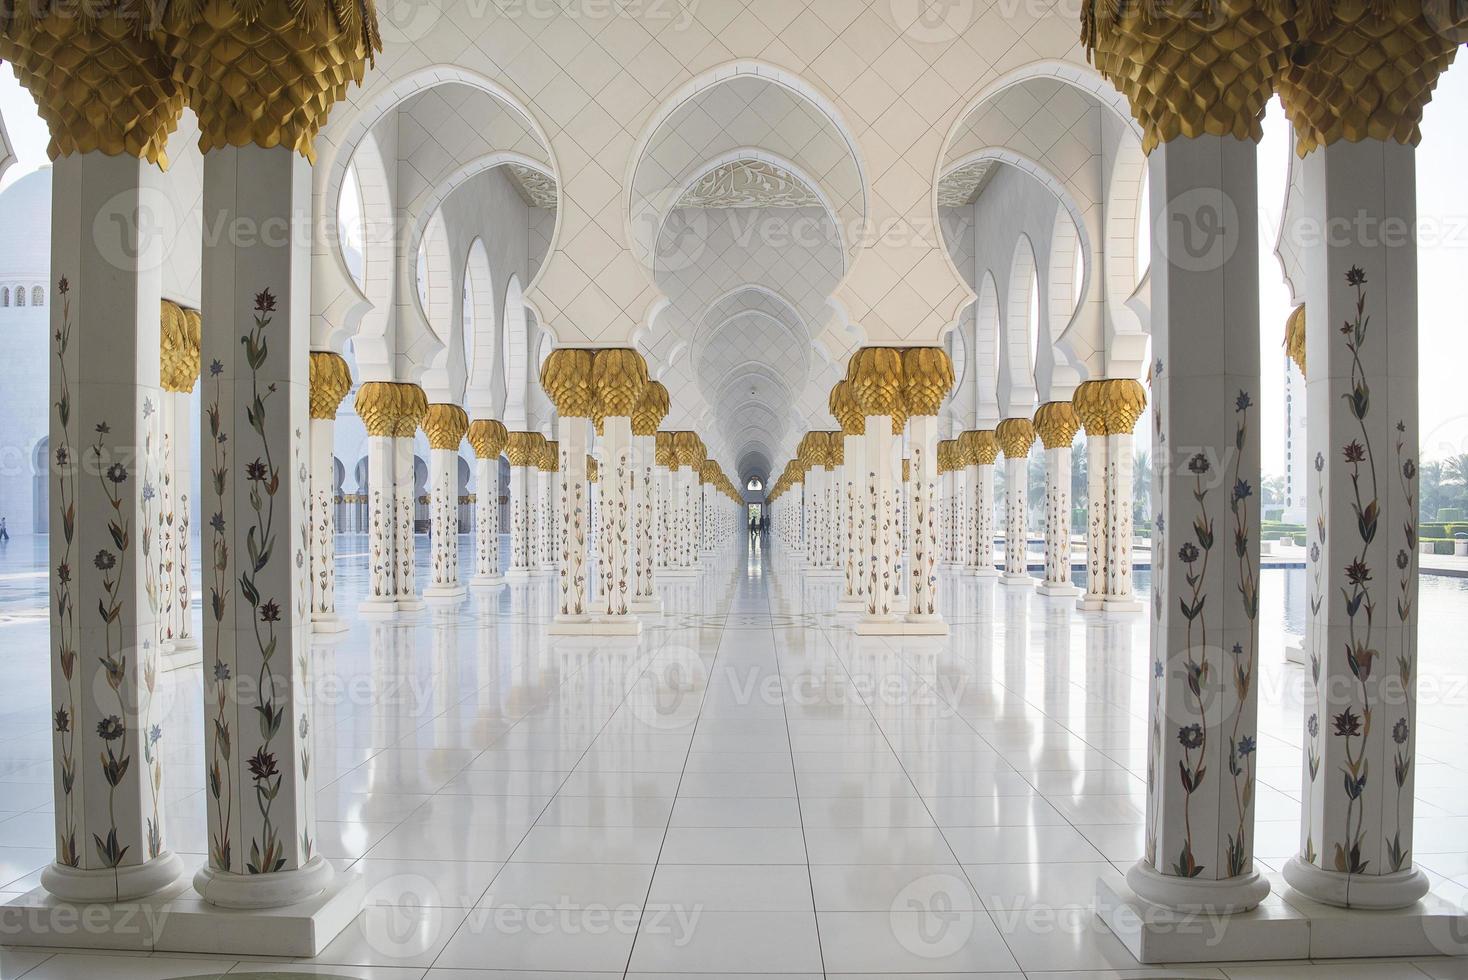 colunata de mármore na mesquita sheikh zayed foto